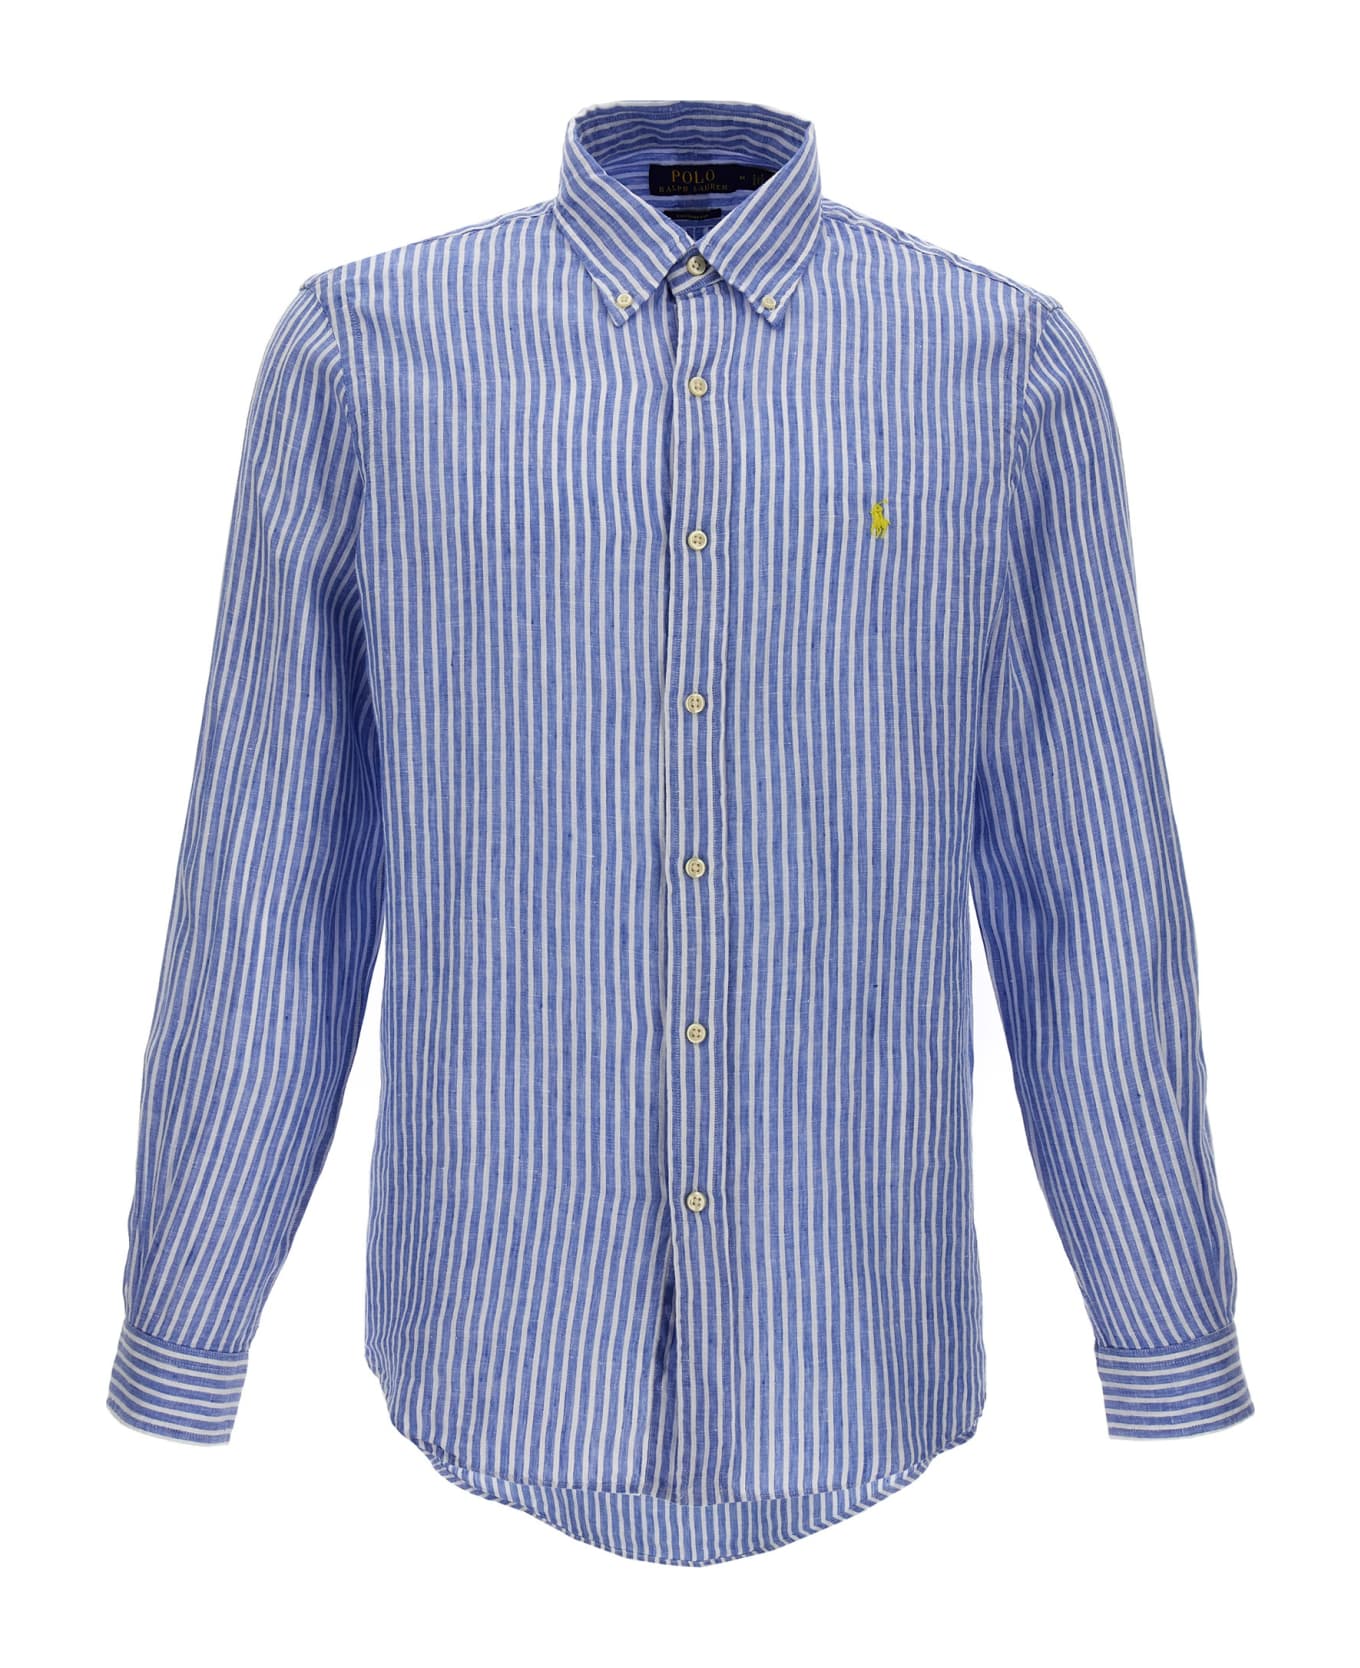 Polo Ralph Lauren Logo Embroidery Striped Shirt - Light Blue